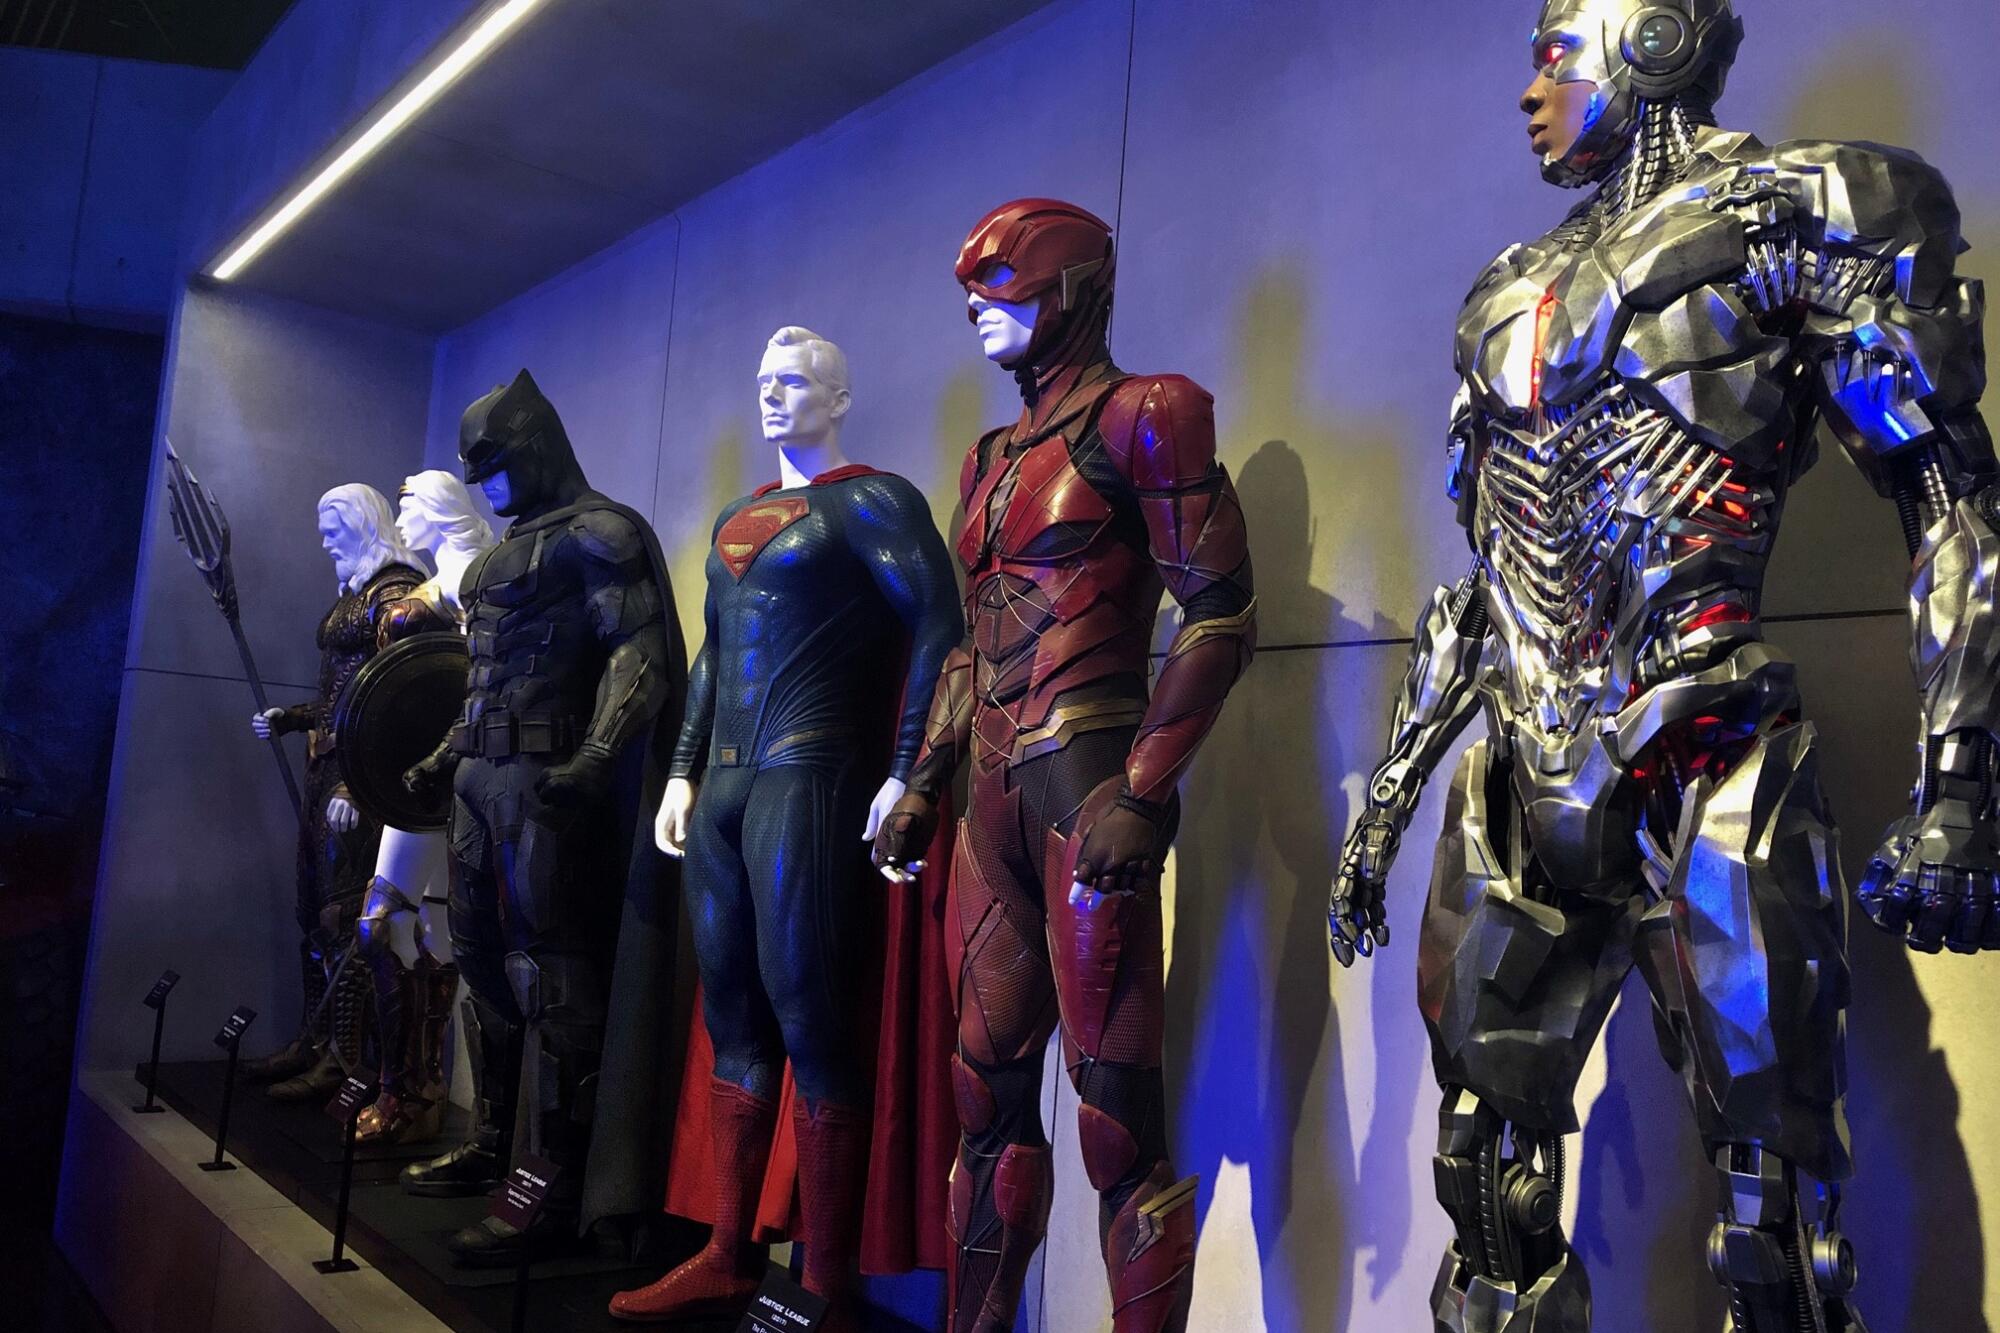 La exhibición de los superhéroes de DC son una gran atractivo para los amantes del género y los comics.